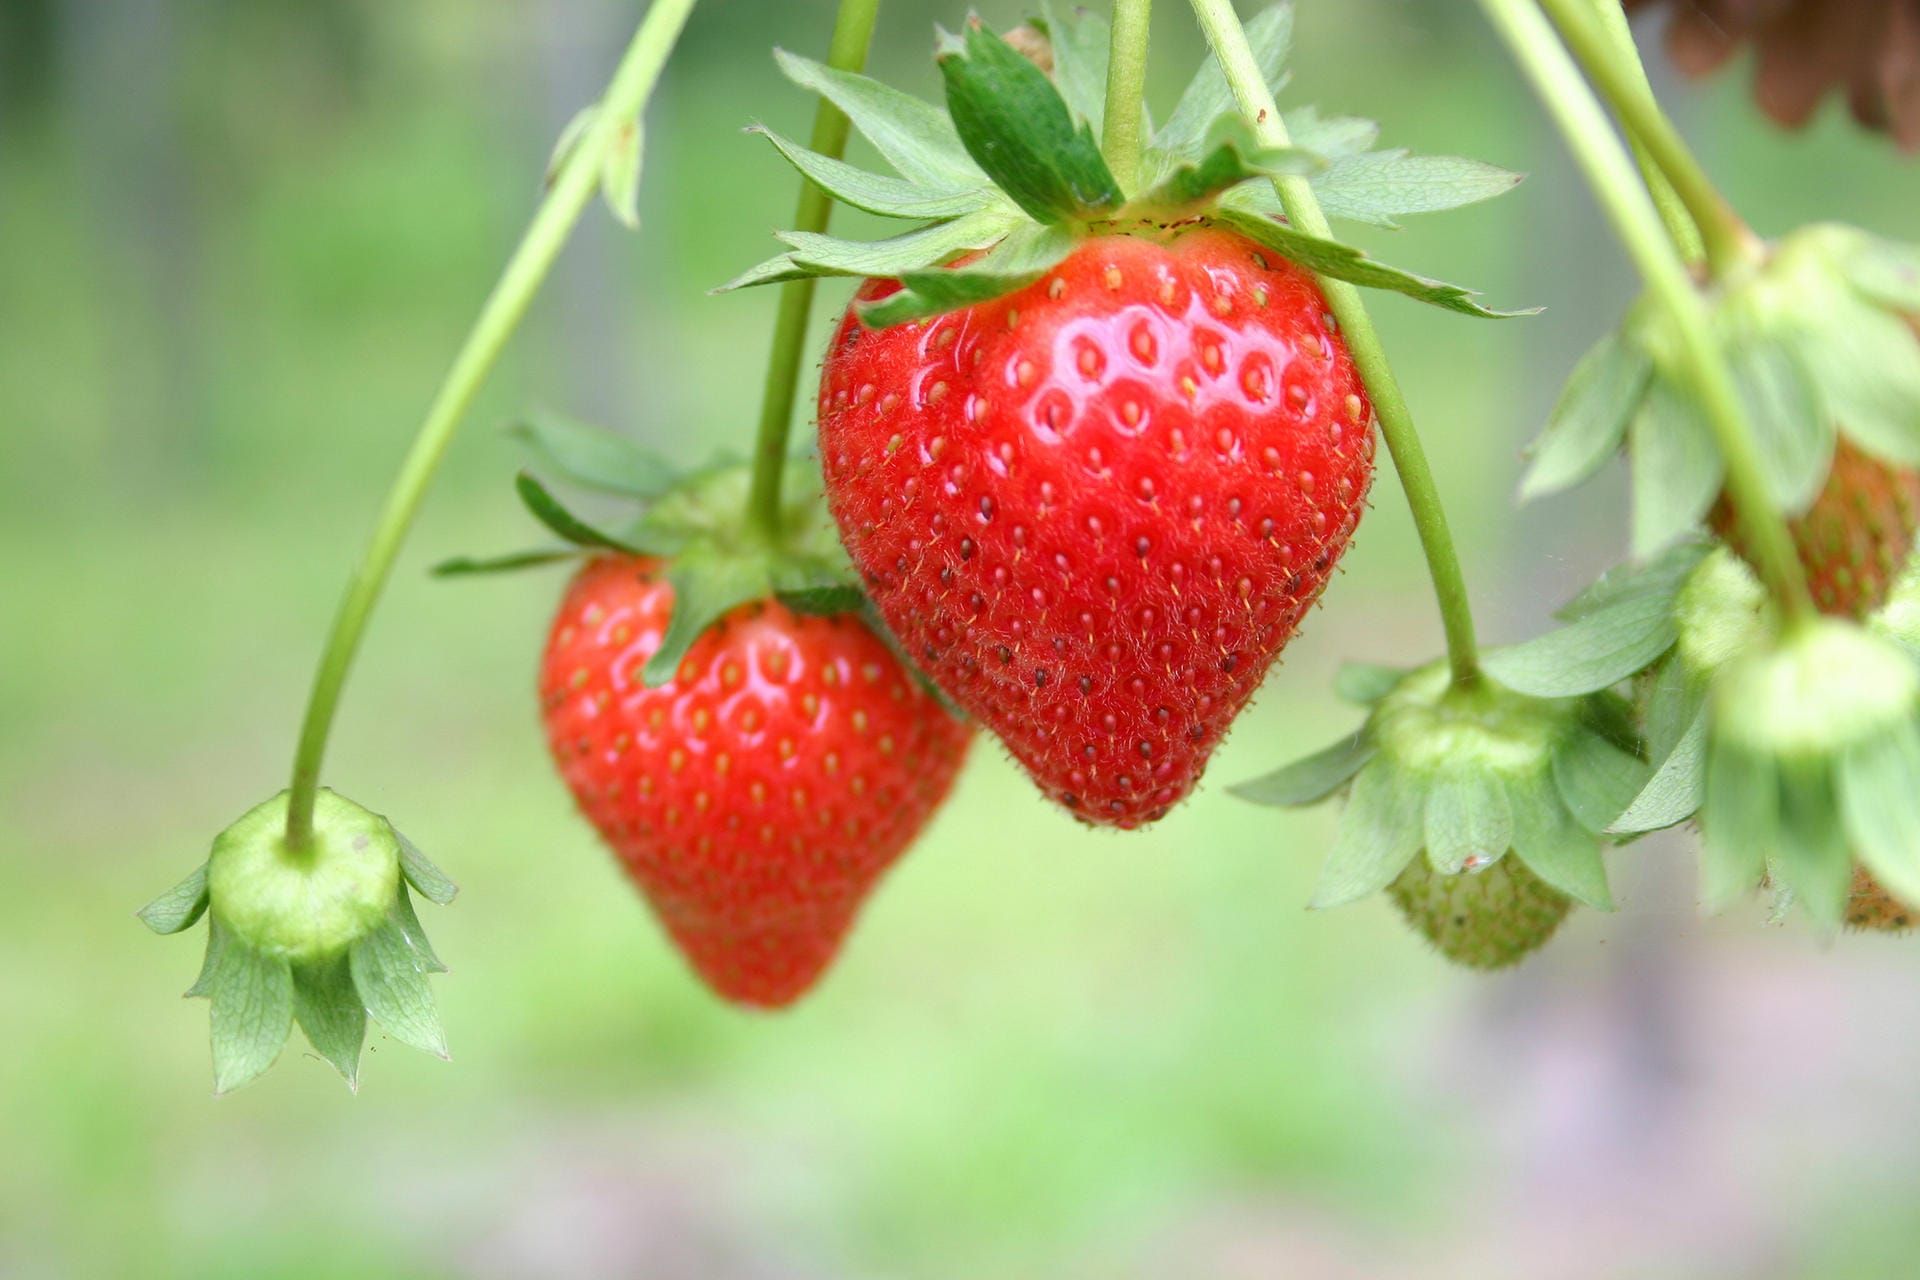 Erdbeeren sind eigentlich keine Beeren – sie gehören botanisch gesehen zu den Sammelnussfrüchten. Die eigentlichen Früchte sind die kleinen Nüsse, also die Samen, an der Außenseite der Erdbeere. Das sind die gelb-grünen Punkte, die auf dem roten Fruchtfleisch sitzen.